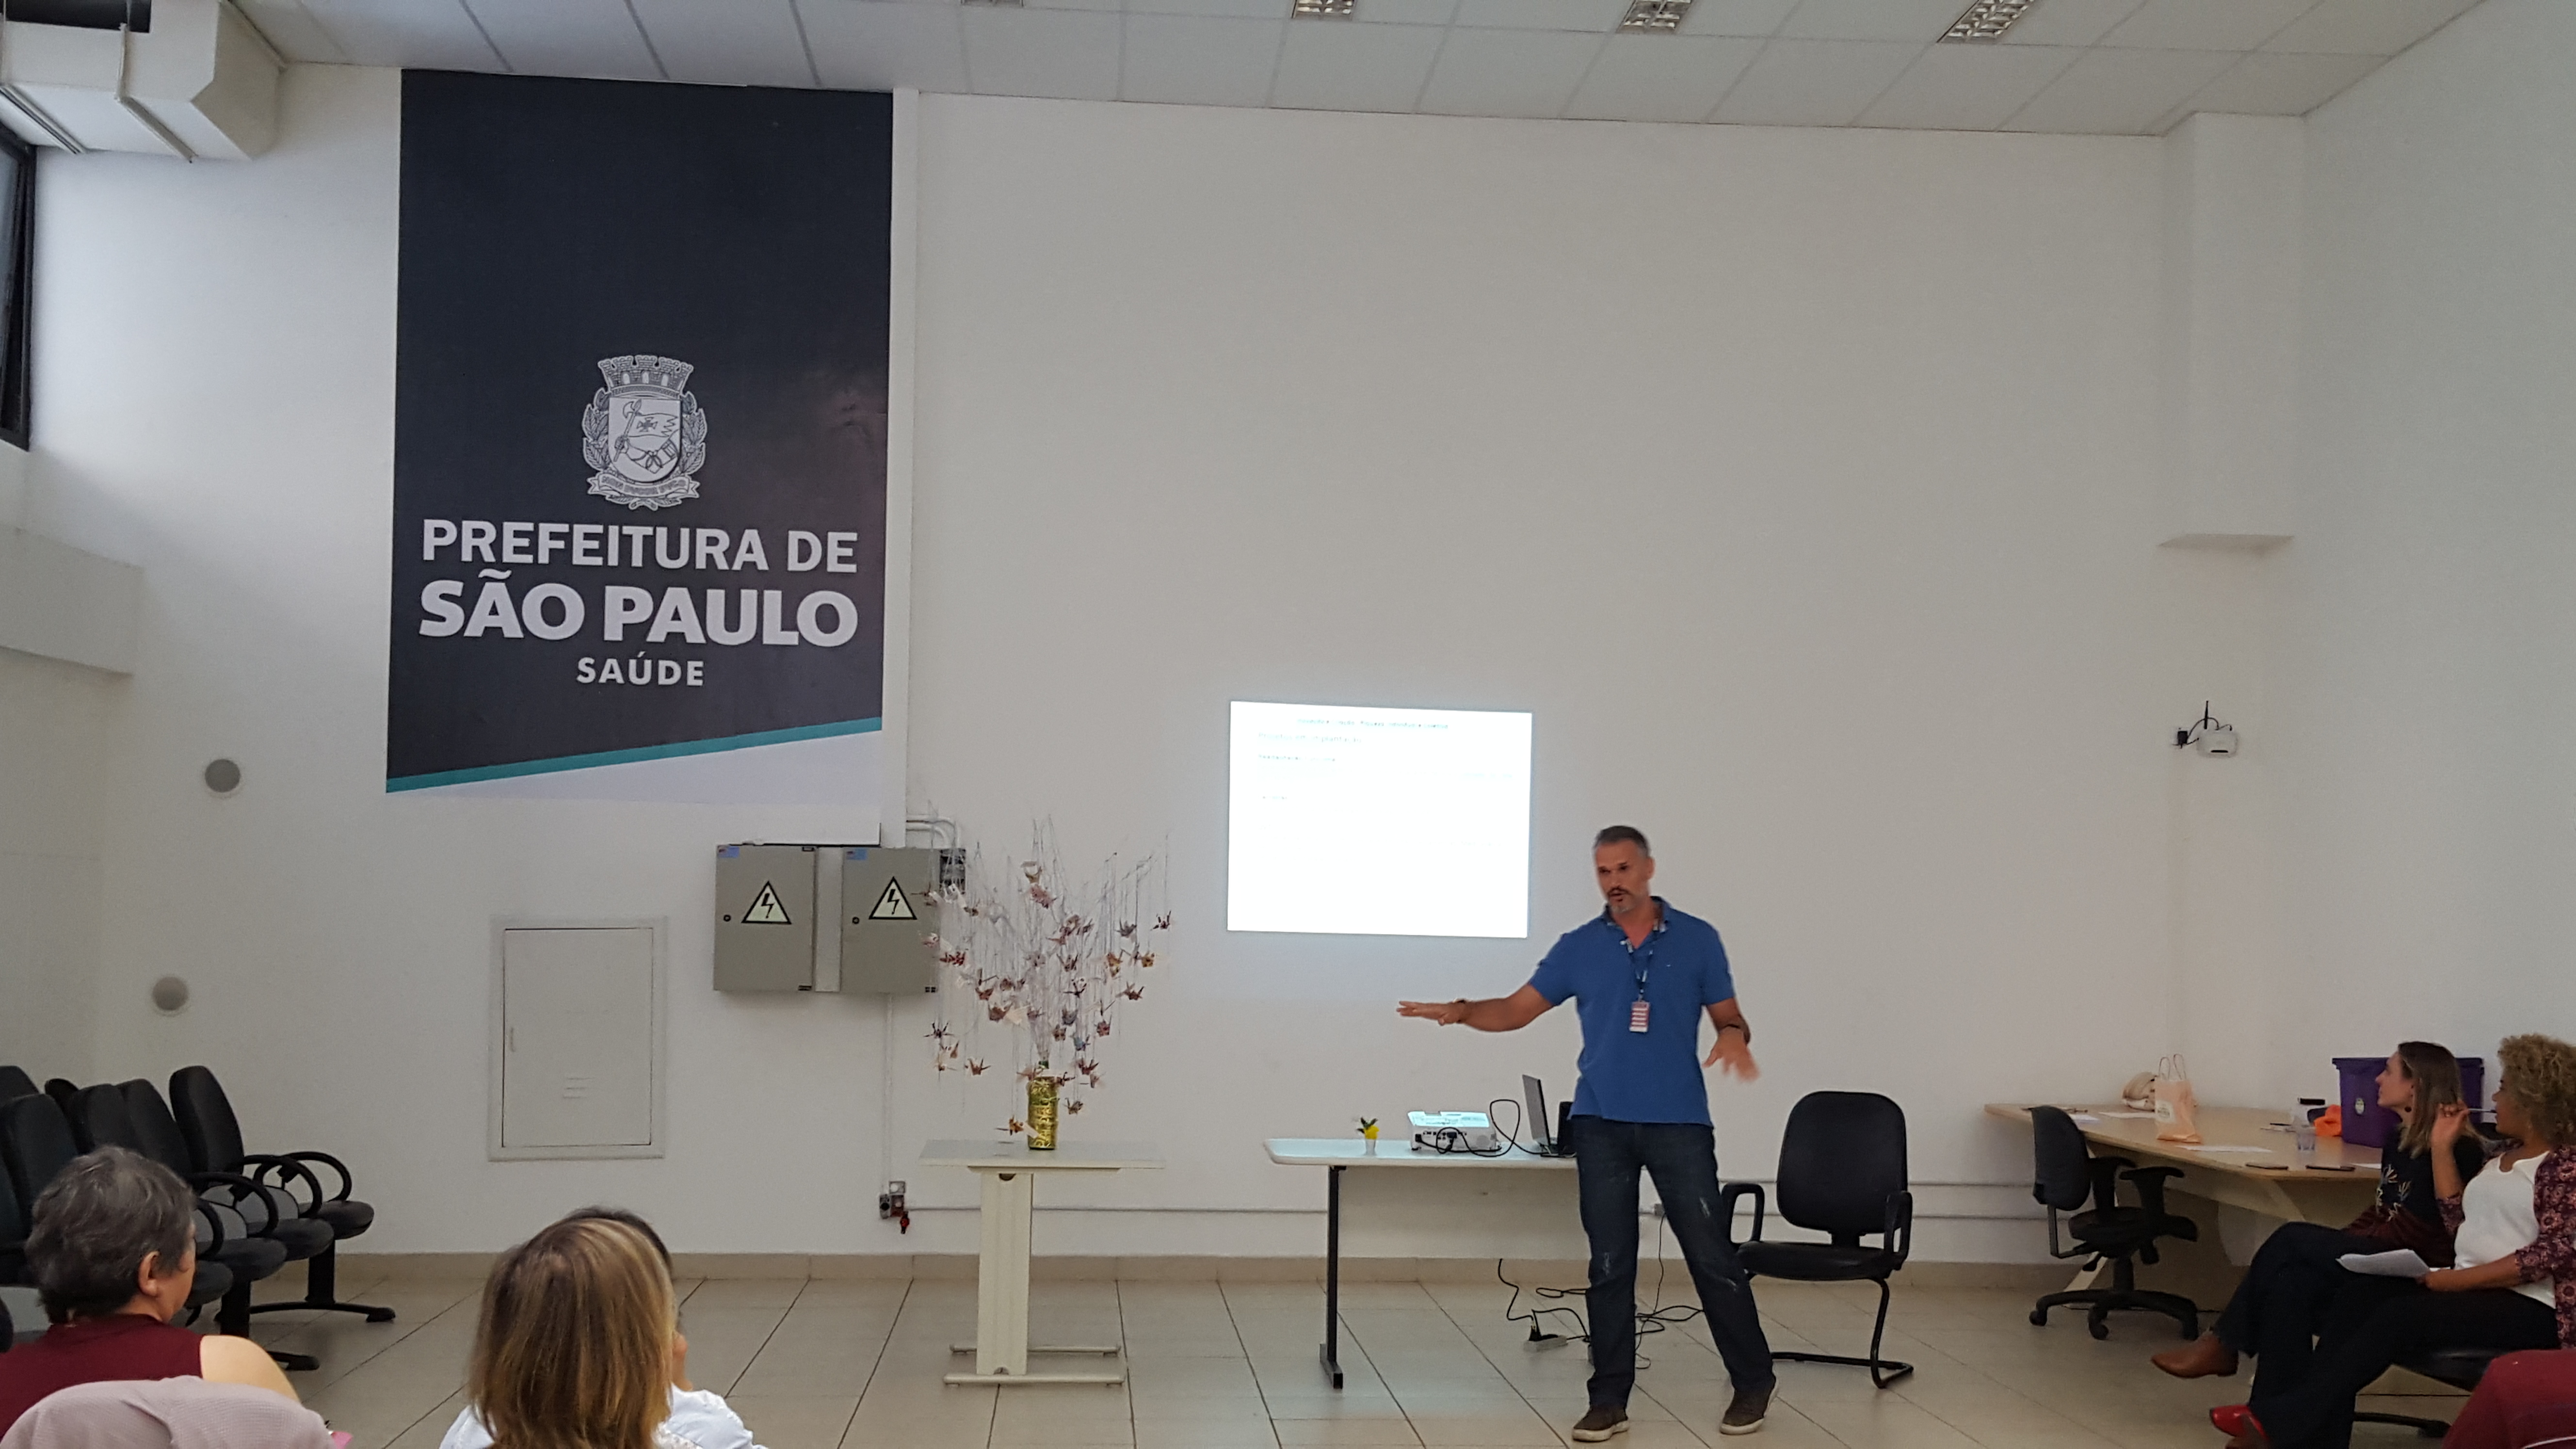 #Paracegover Na imagem: Um servidor está no centro da imagem falando sobre seu projeto. Atrás dele está uma imagem com o logo da Prefeitura Municipal de São Paulo.